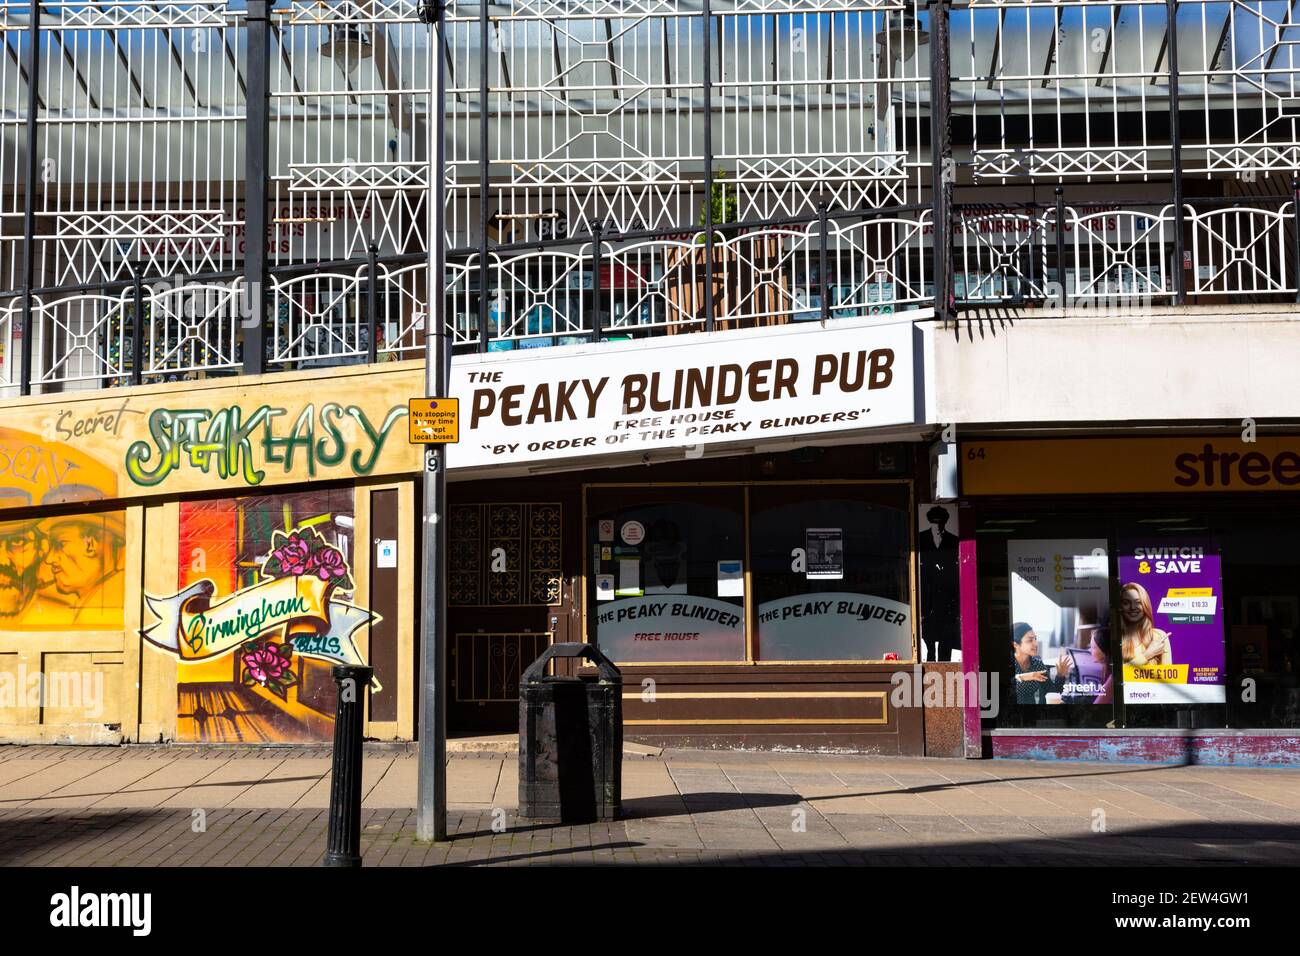 The Peaky Blinder Pub, Dale End, Birmingham, UK Stock Photo